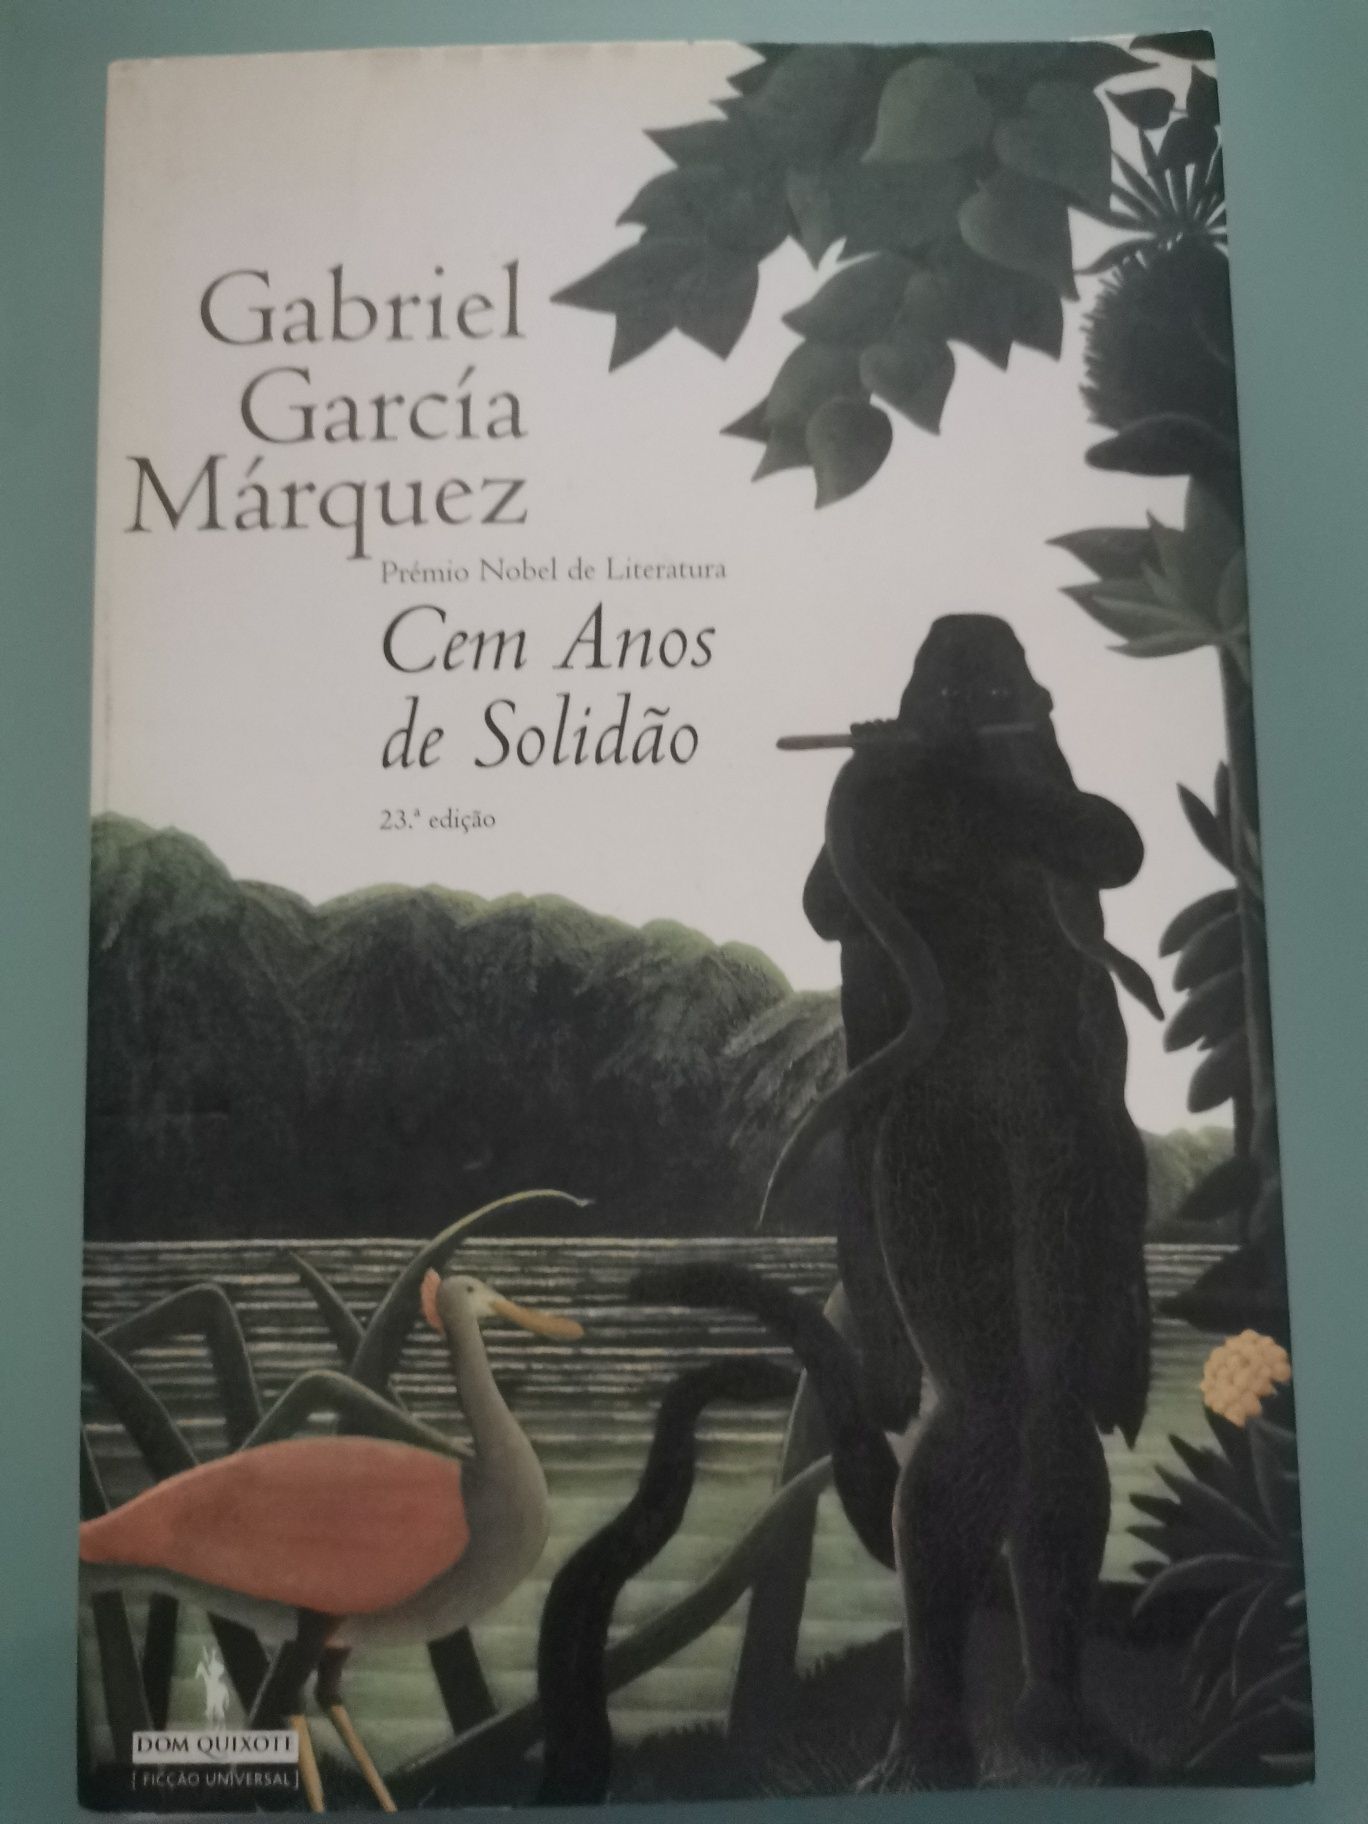 Cem anos de solidão - Gabriel Garcia Marquez